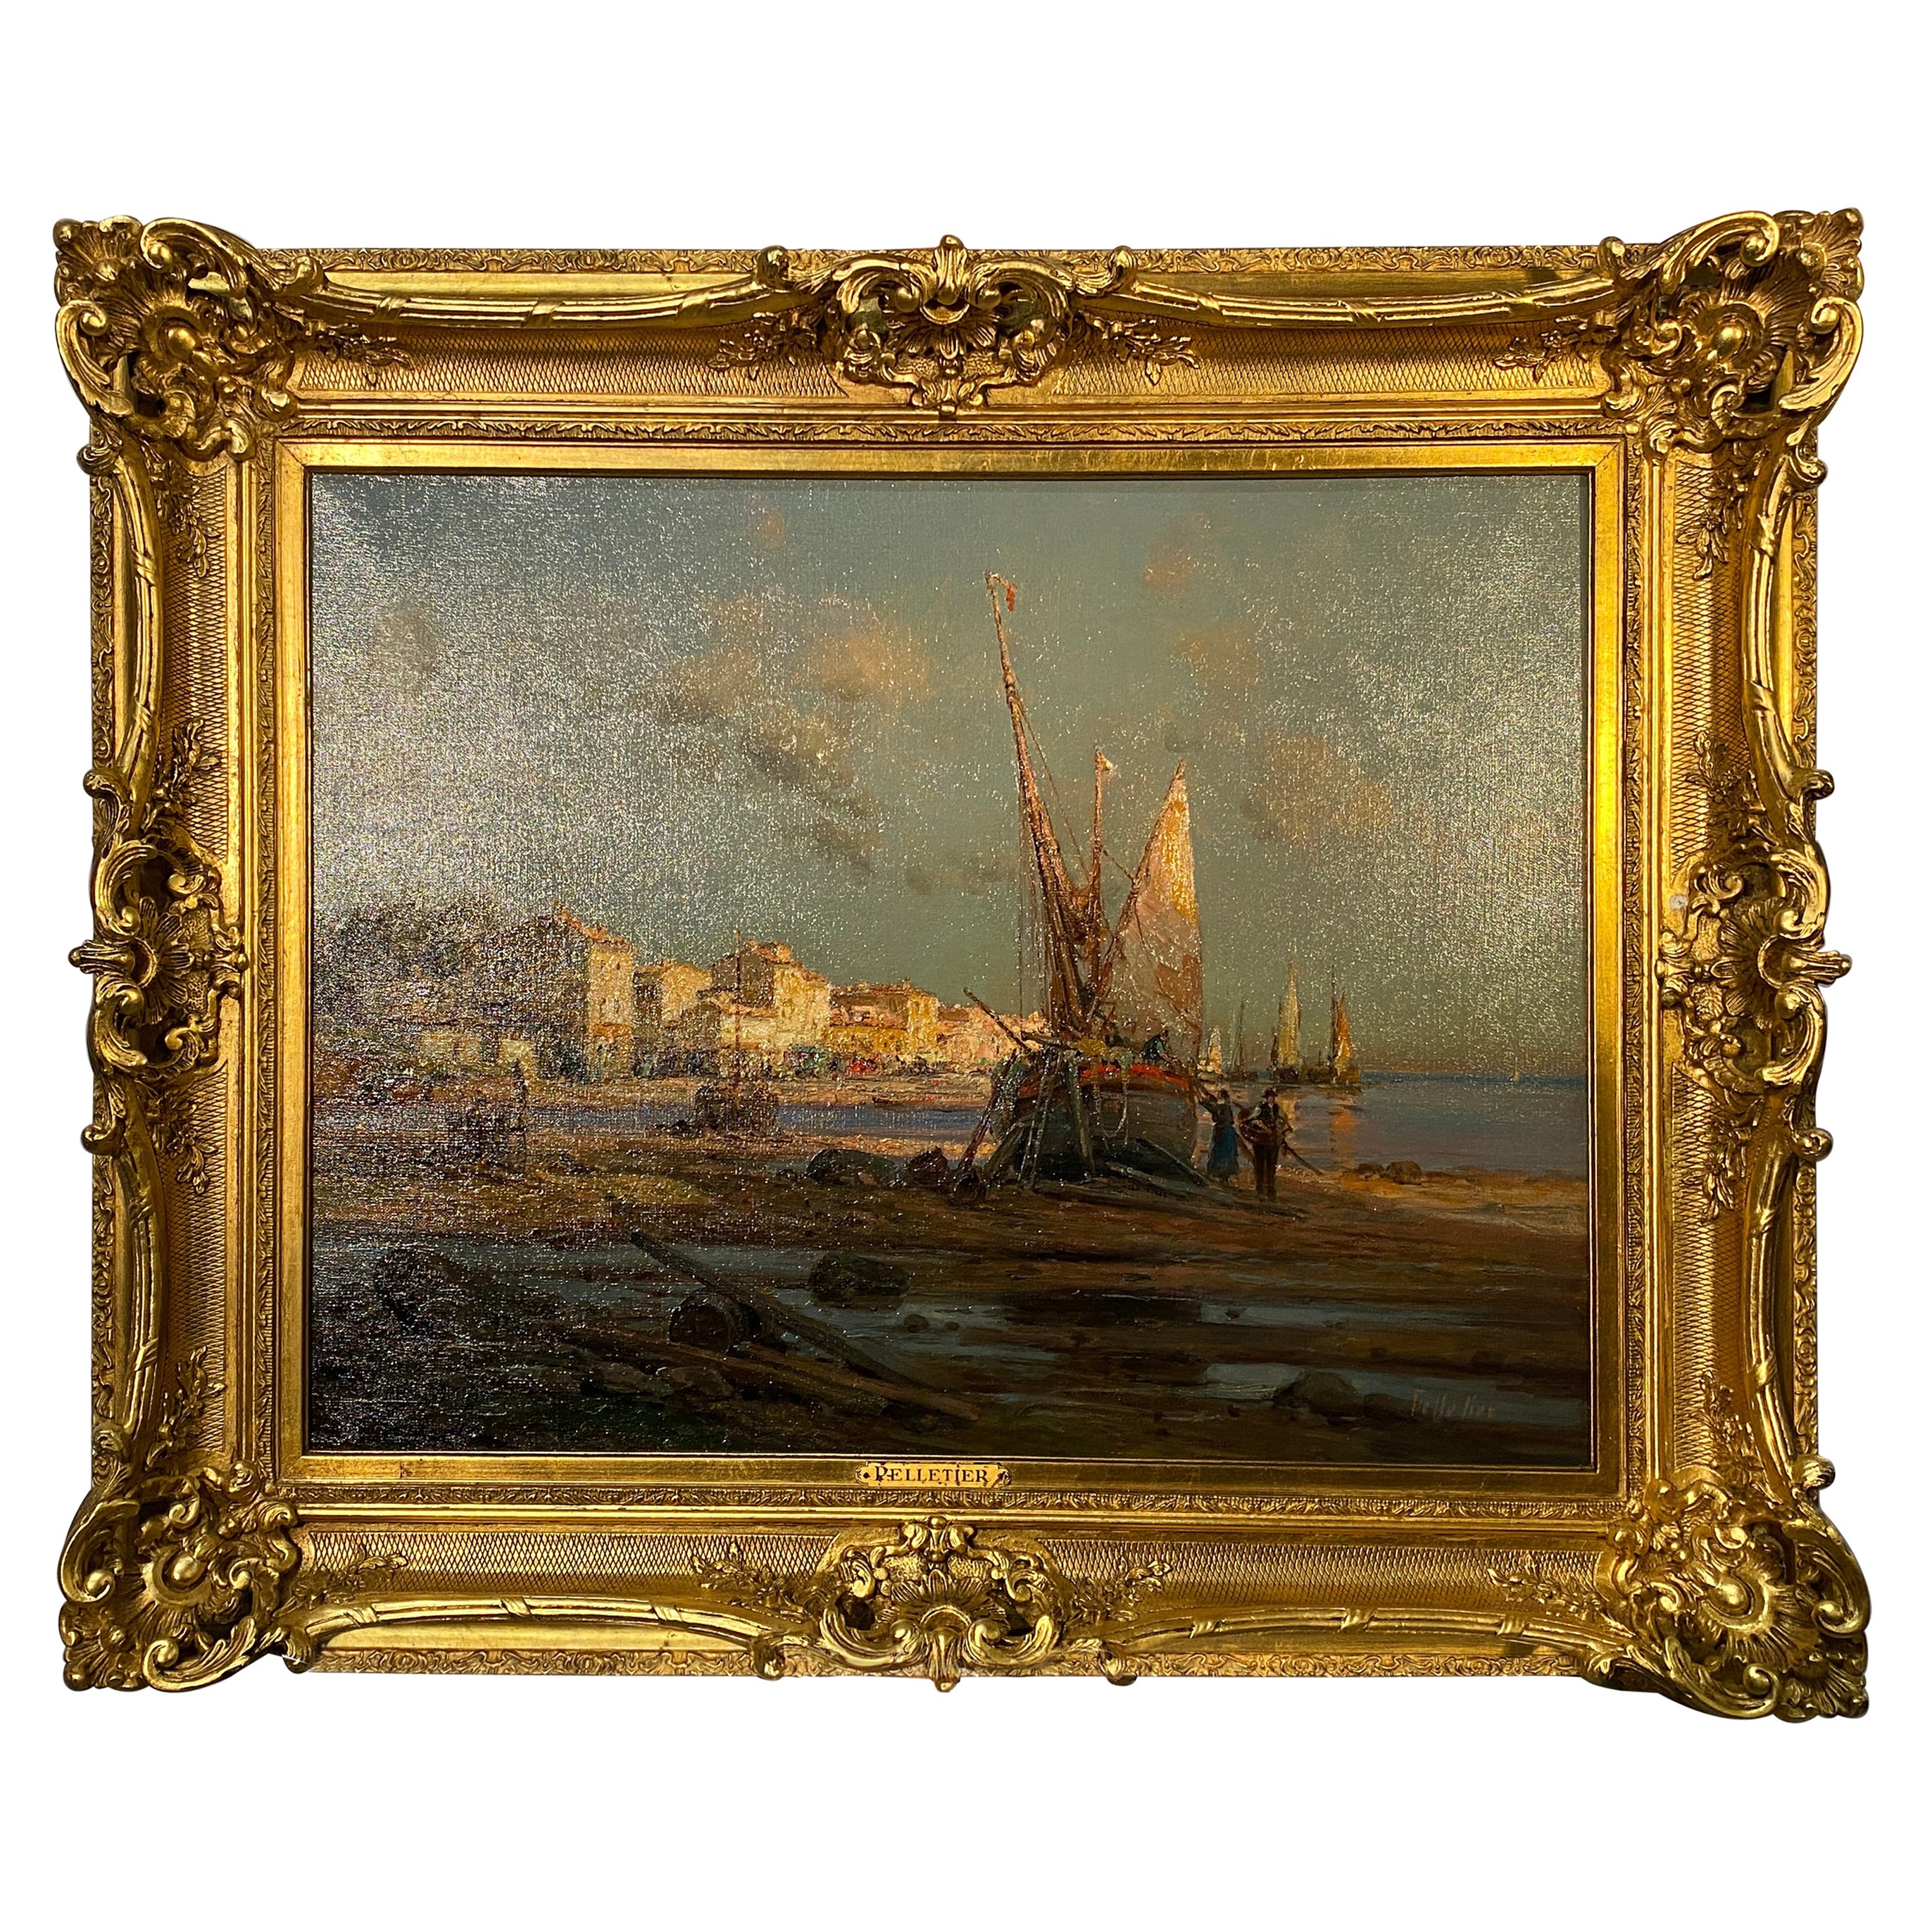 Gemälde, Öl auf Leinwand, Französische Landschaft am Meer, von Pierre Jacques Pelletier